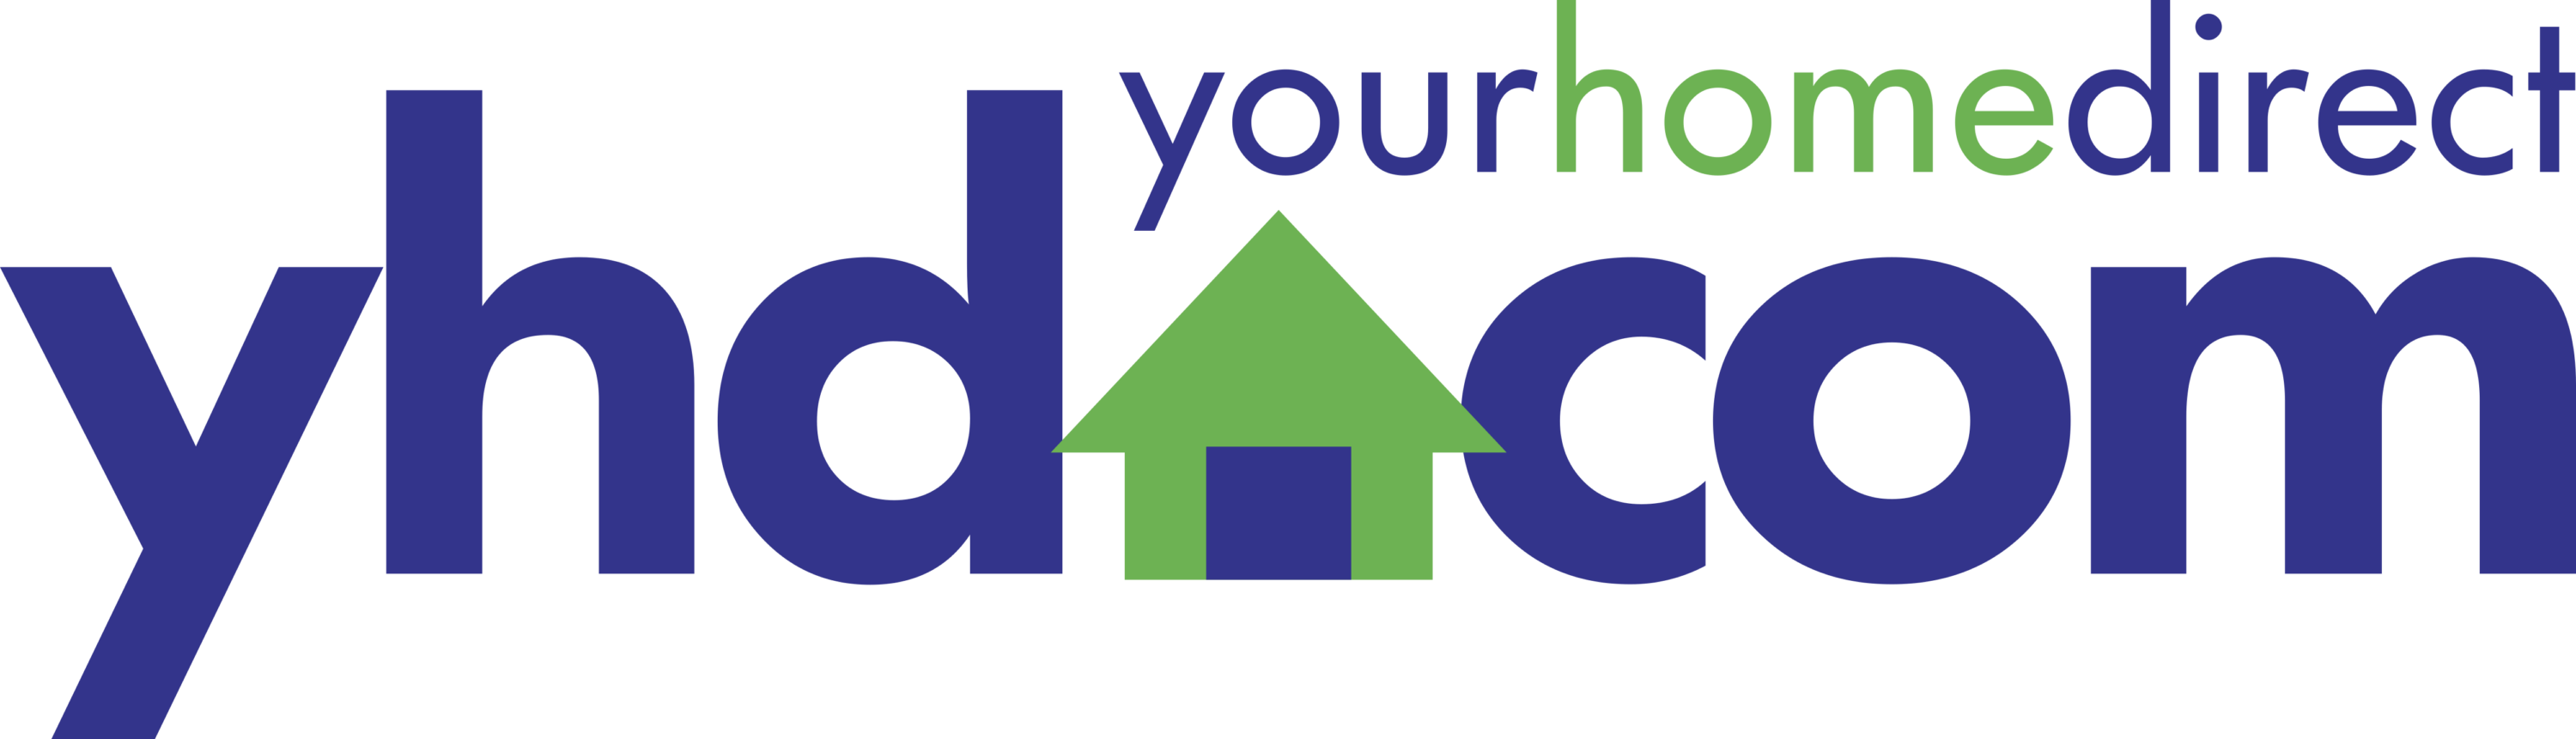 Yourhomedirect Logo